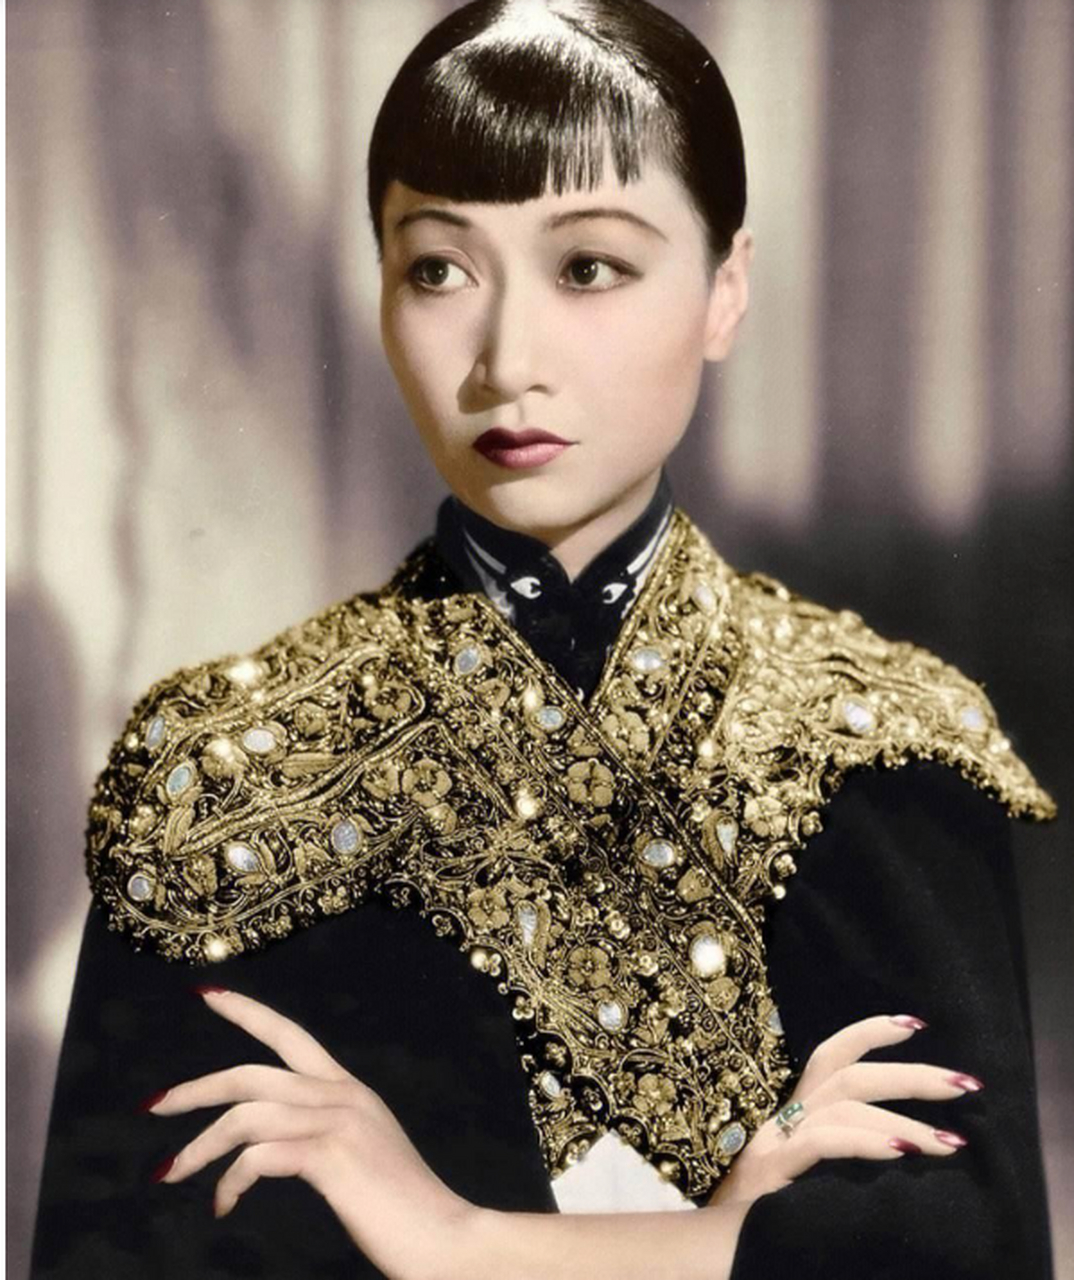 图为首位出现在美国货币上的华裔女性,电影,舞台剧演员黄柳霜,她出生